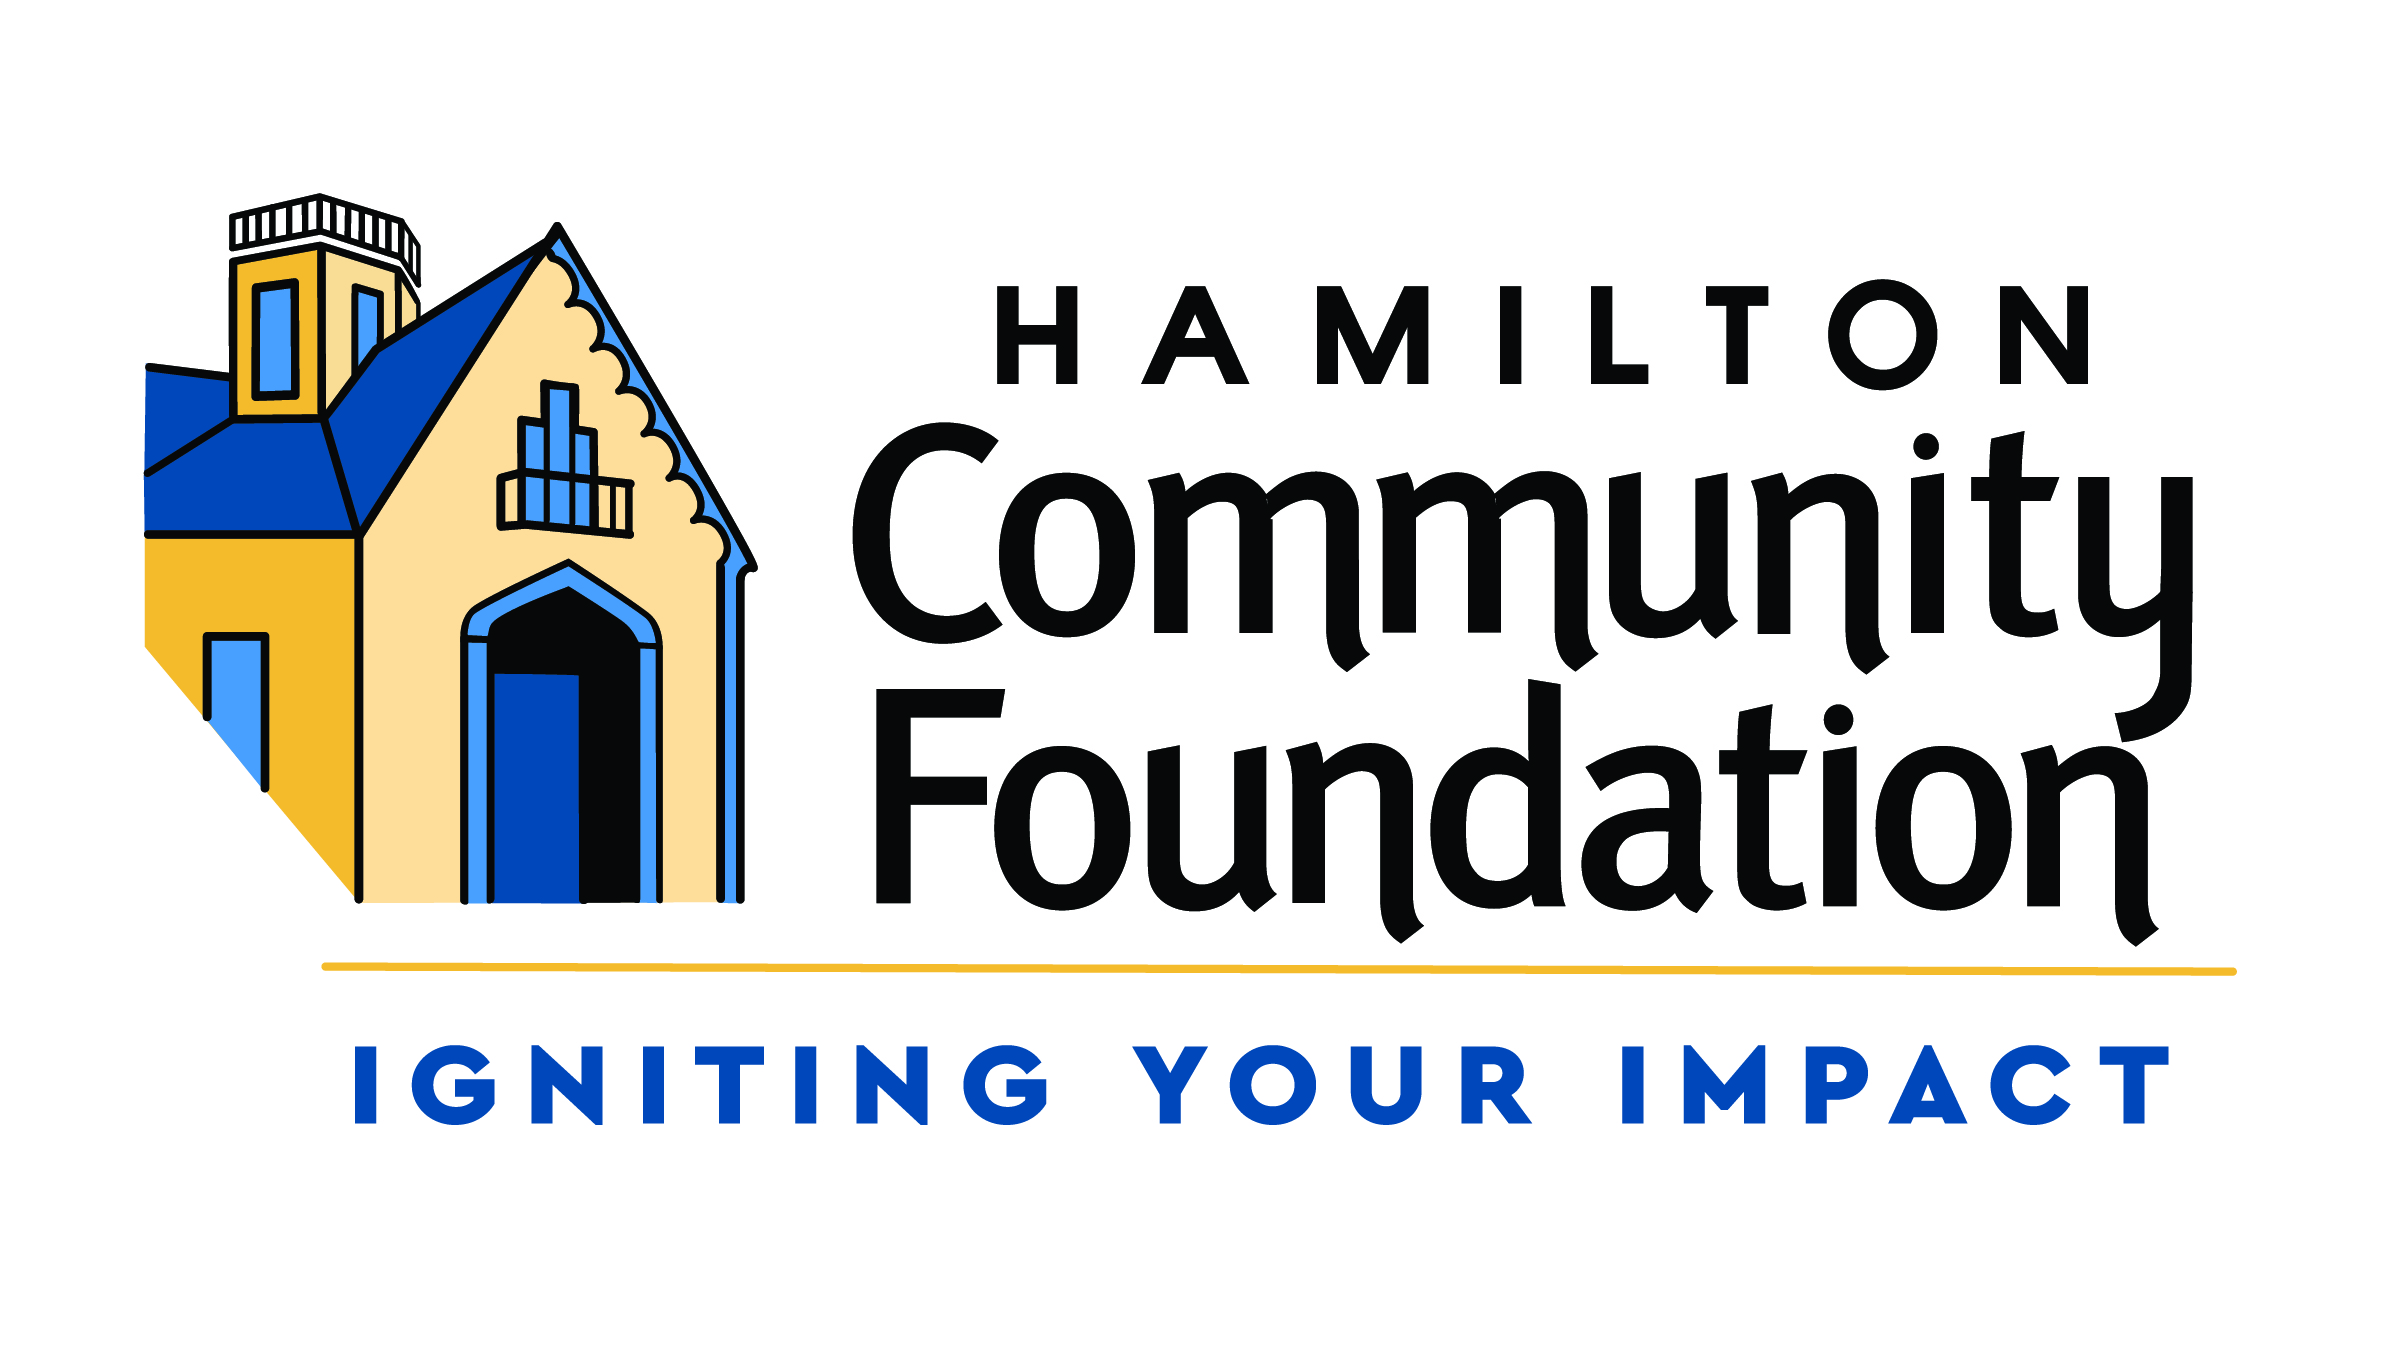 Hamilton Community Foundation, Igniting Your Impact